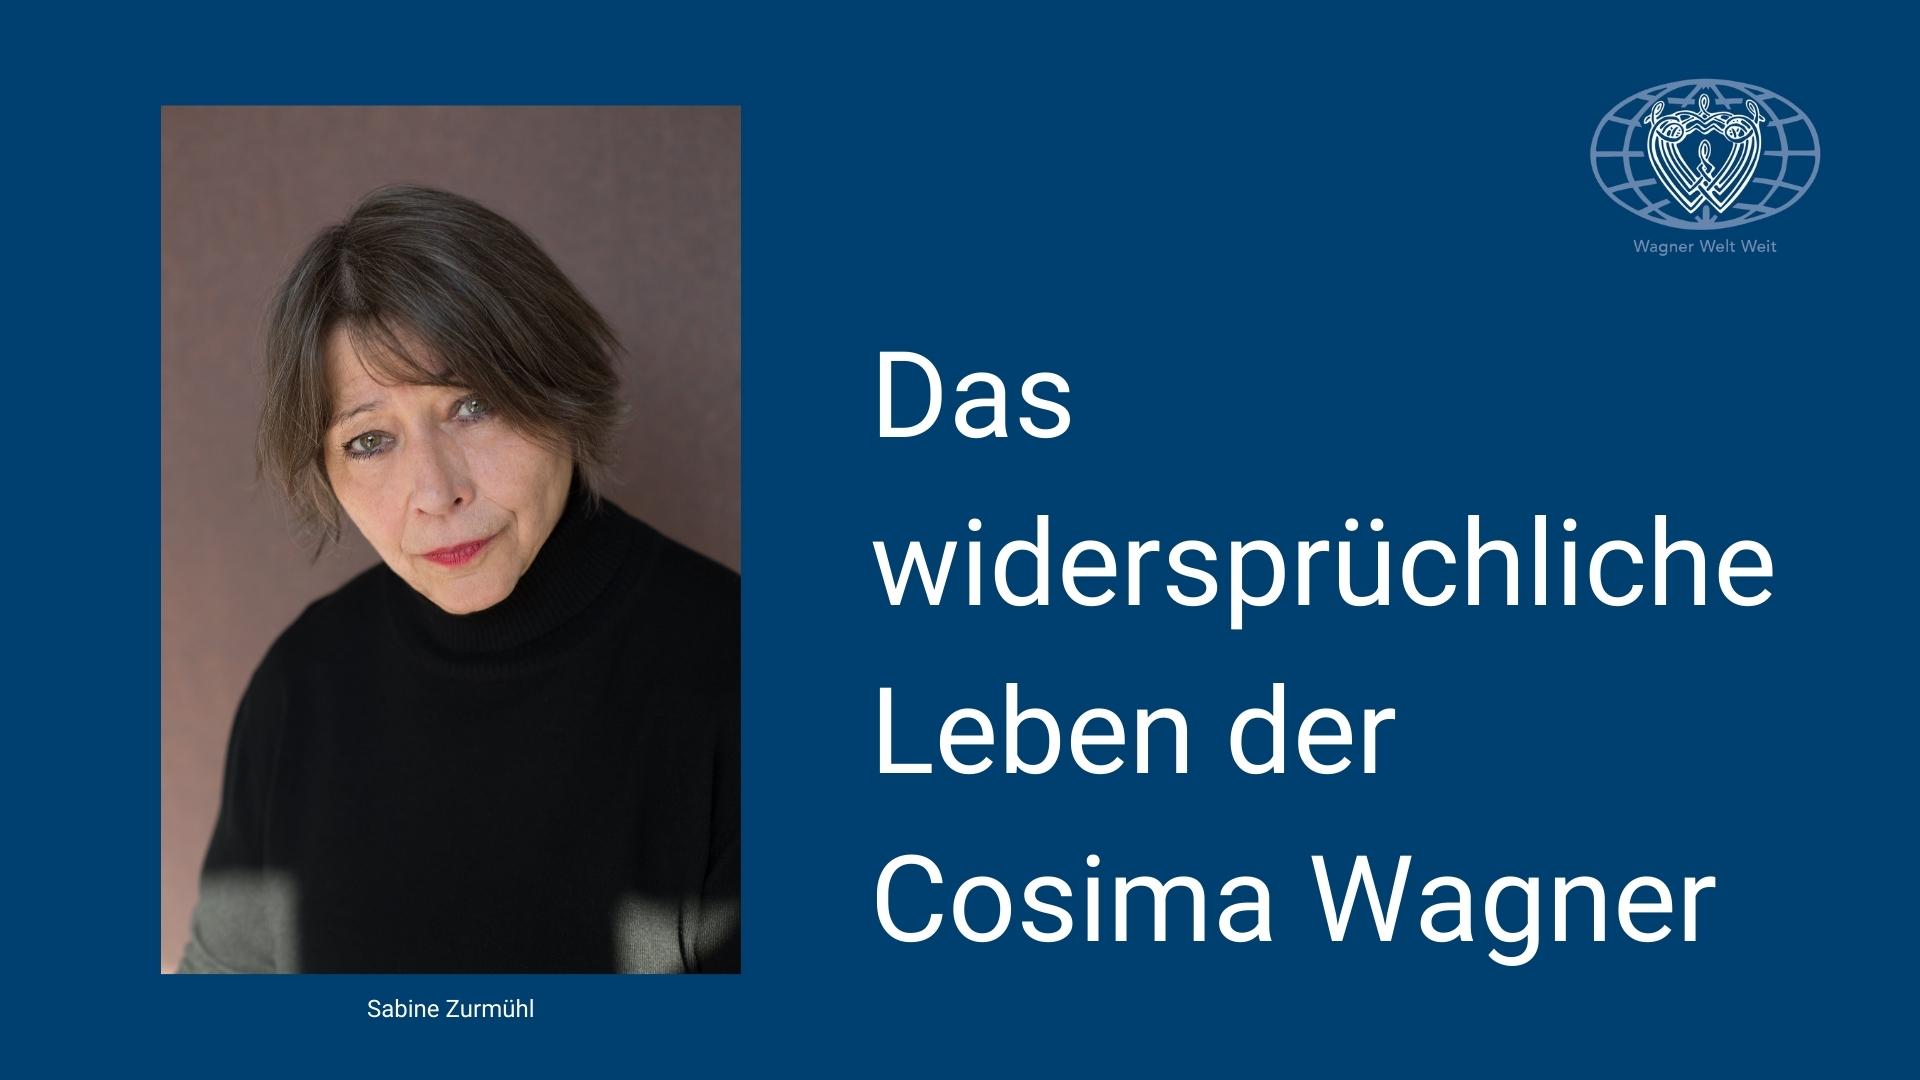 Das widersprüchliche Leben der Cosima Wagner